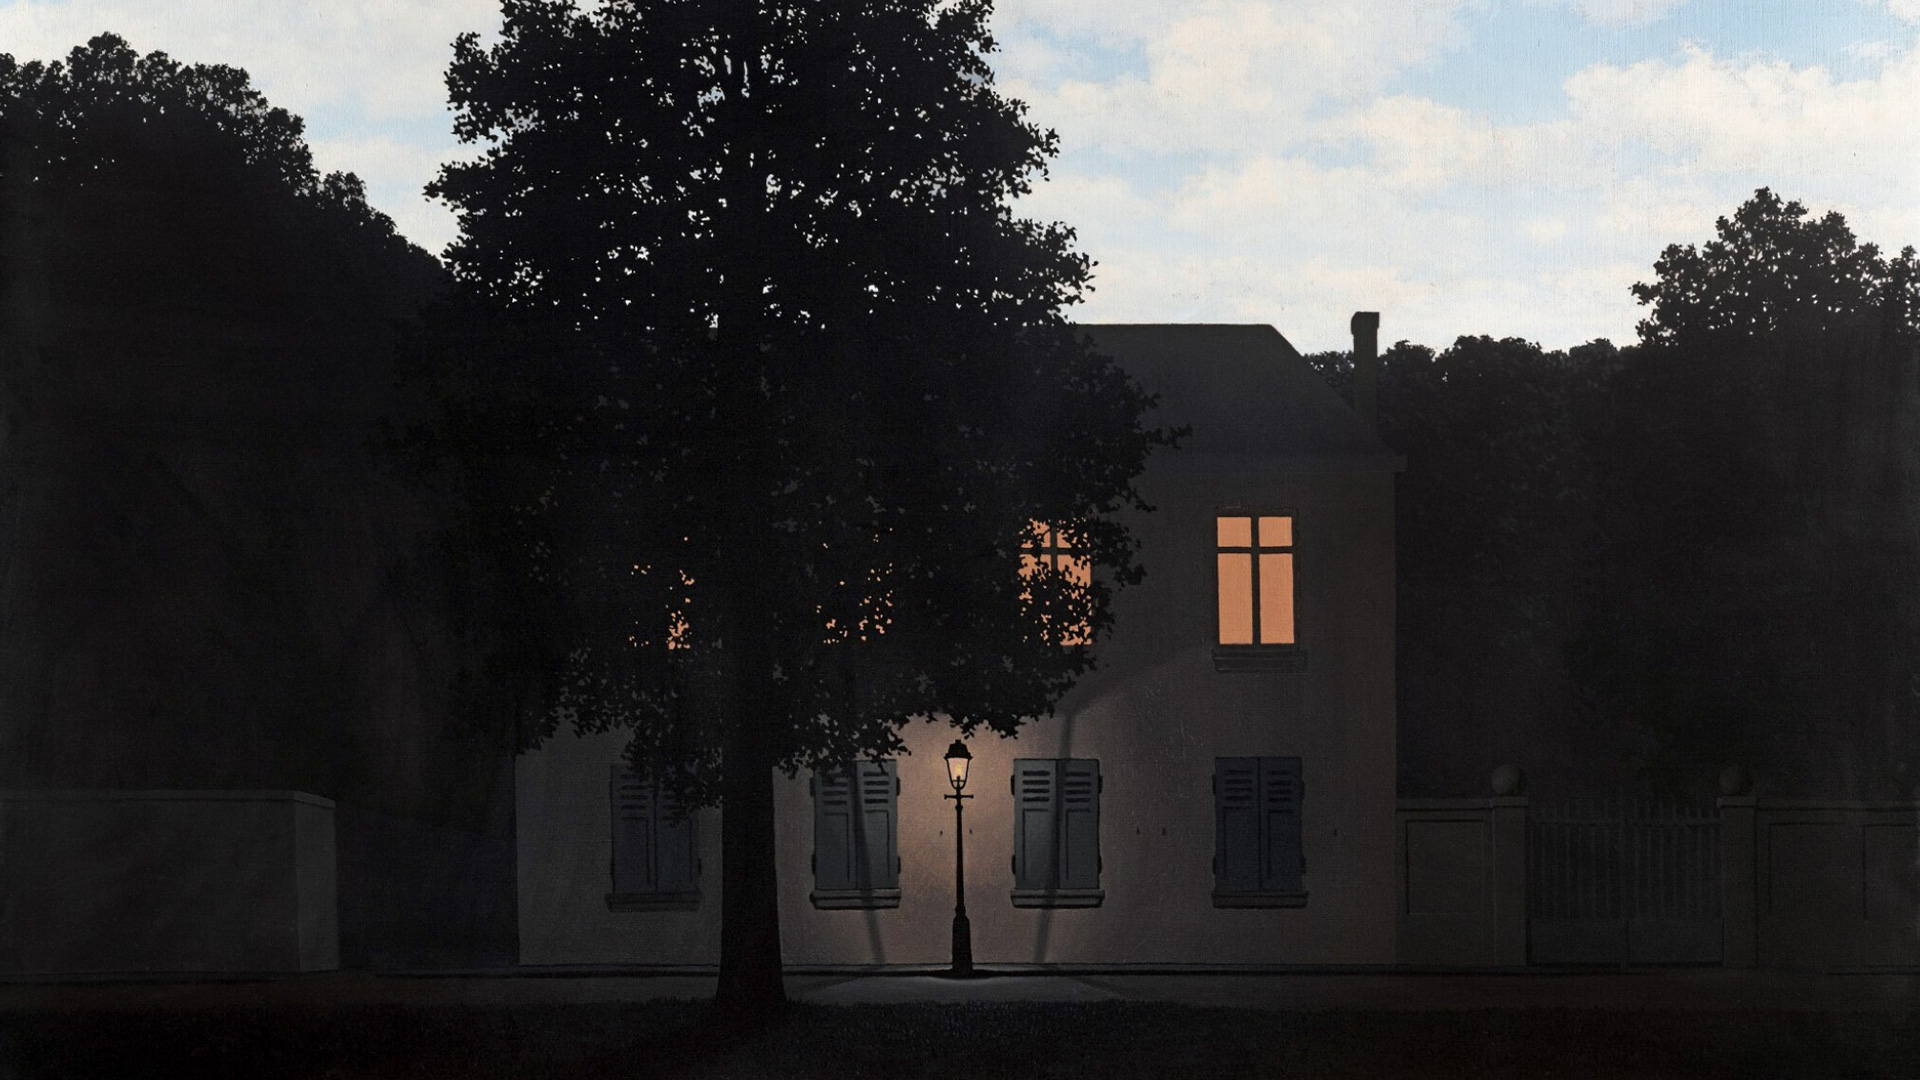 La belleza de la semana: “El imperio de las luces”, de René Magritte